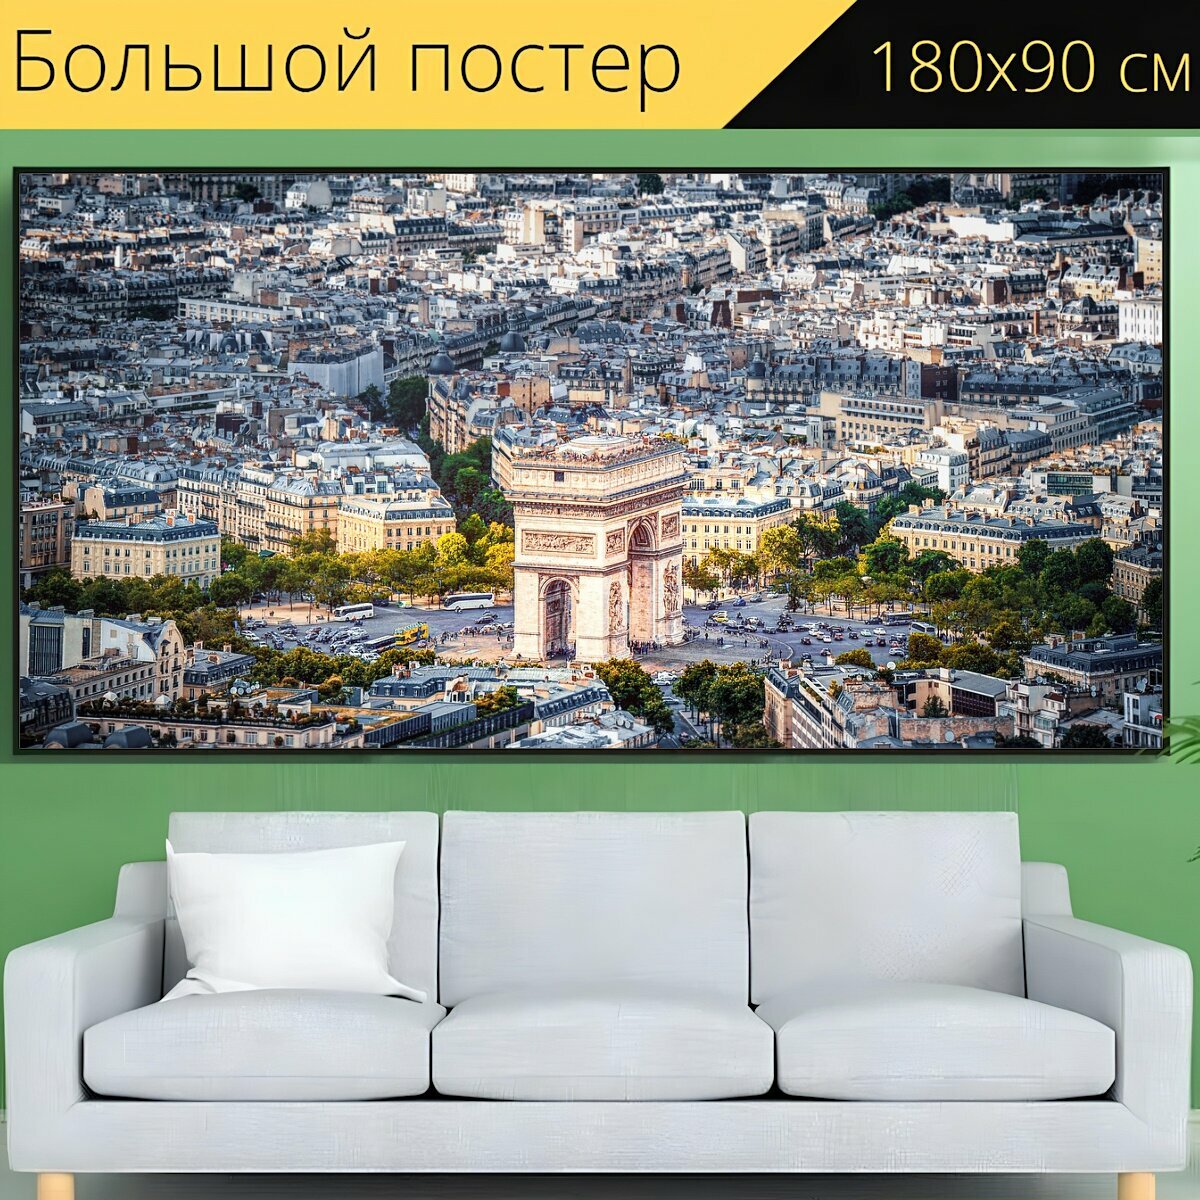 Большой постер "Париж, город, городской пейзаж" 180 x 90 см. для интерьера